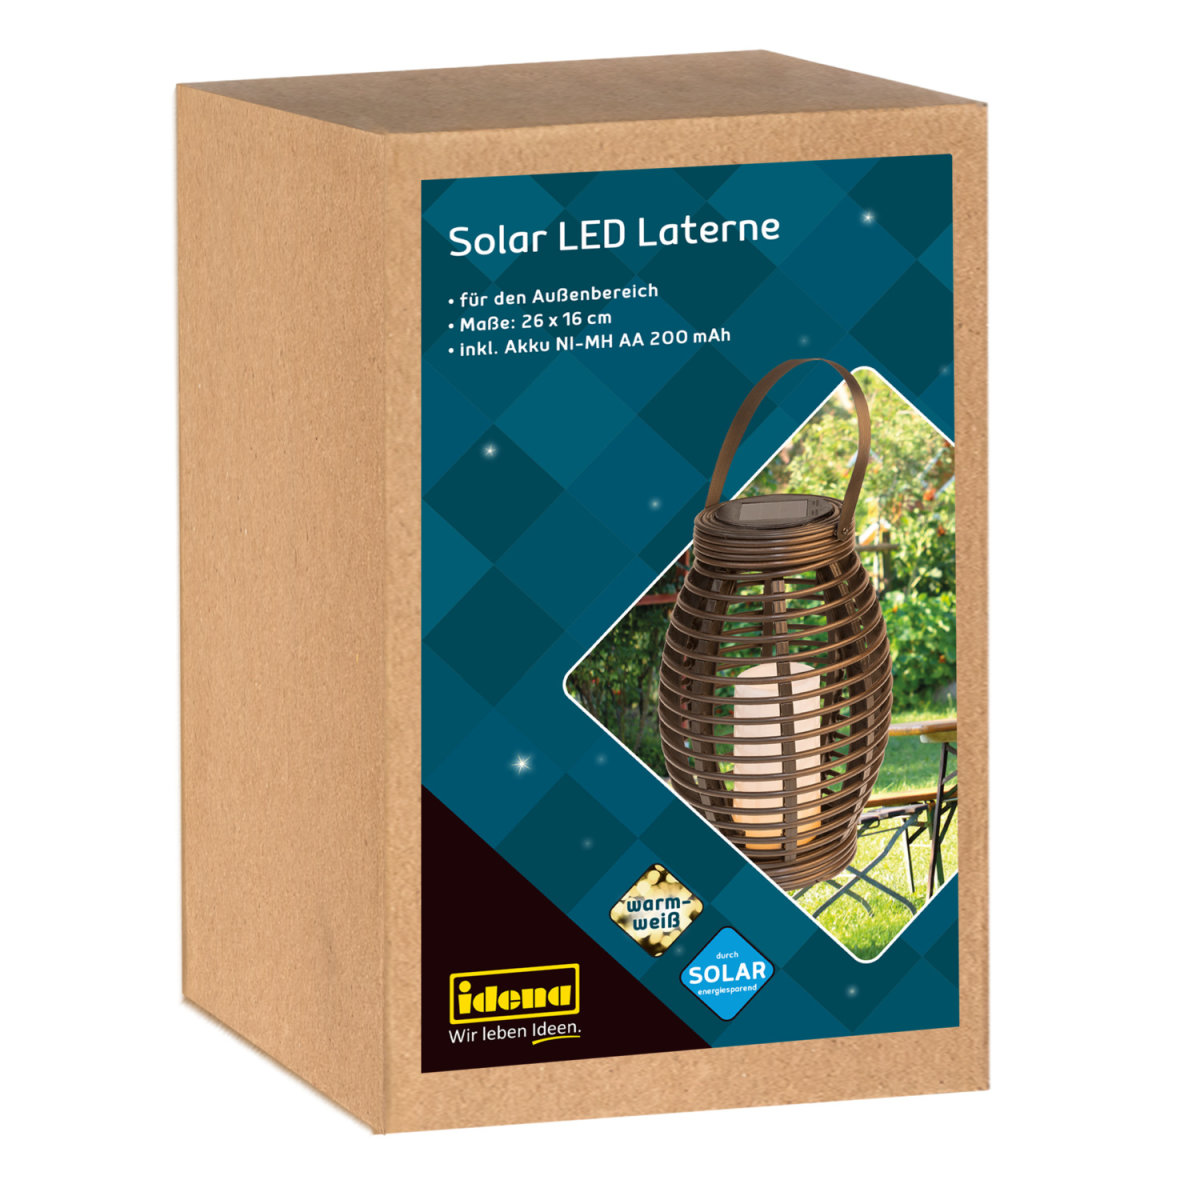 Idena - Solar LED Laterne » Zum jetzt kaufen Shop online